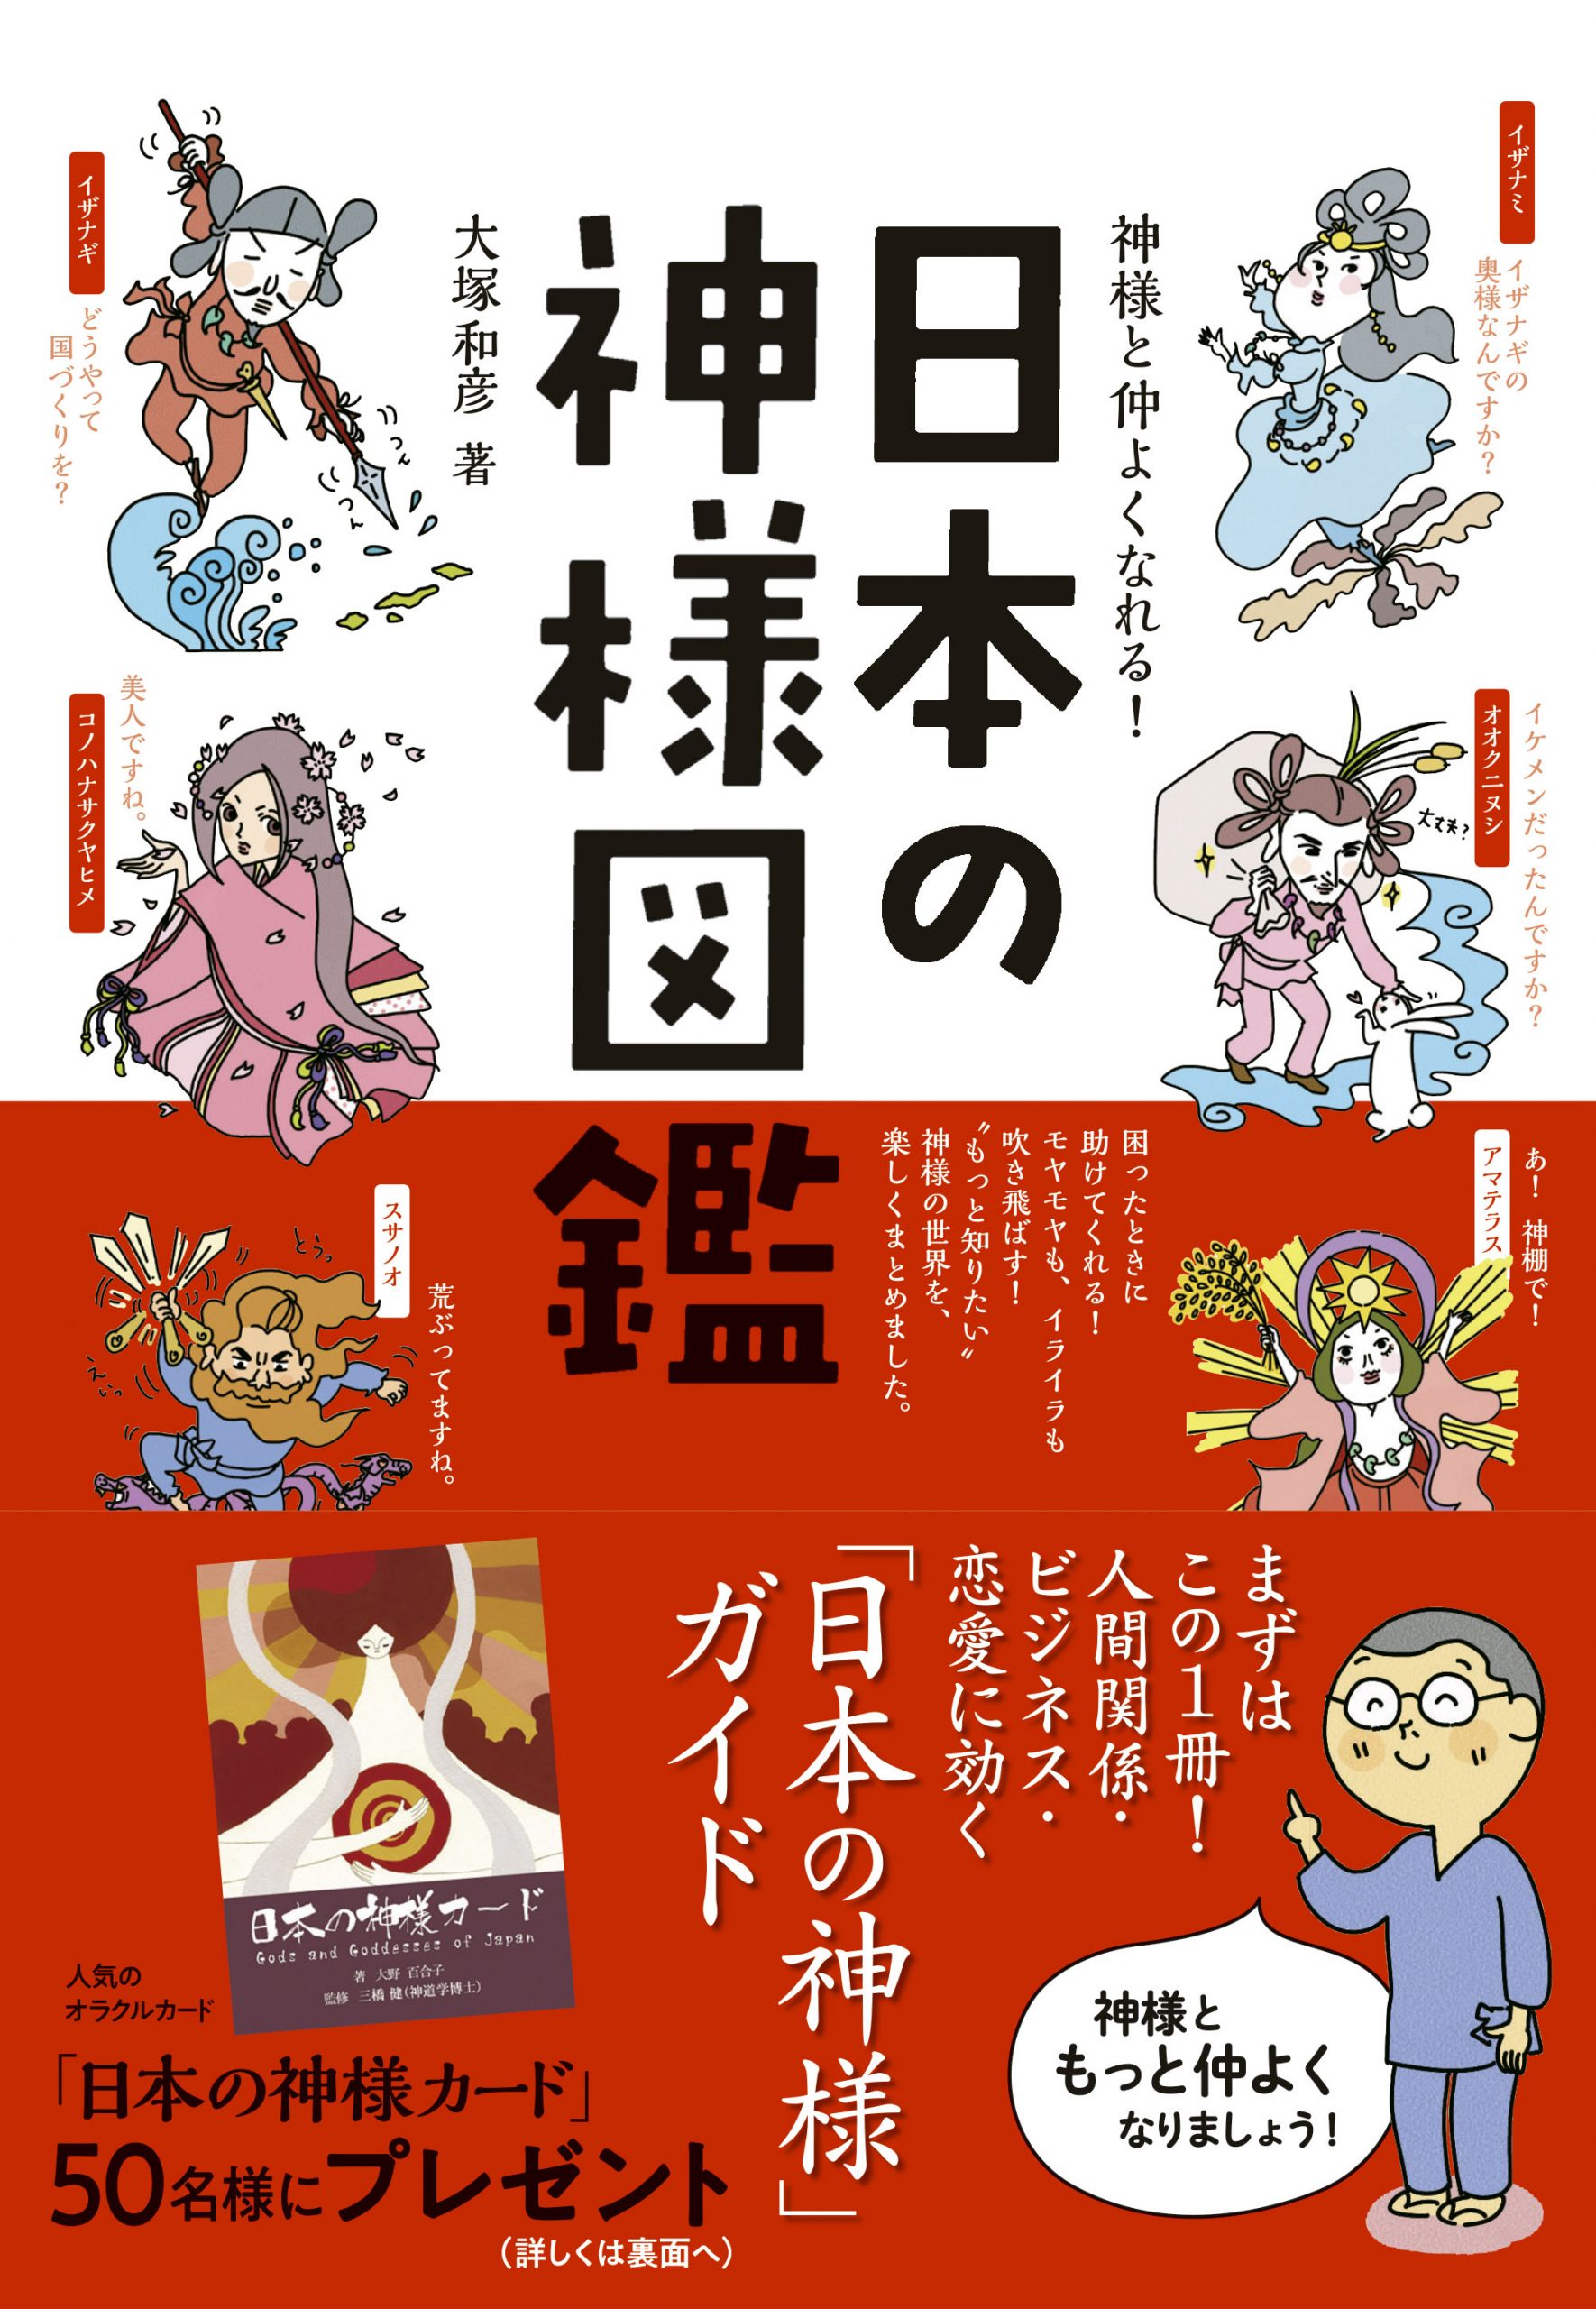 神様と仲よくなれる 日本の神様図鑑 キャラ図鑑 日本のオラクルカード タロットカード全集オンラインストア